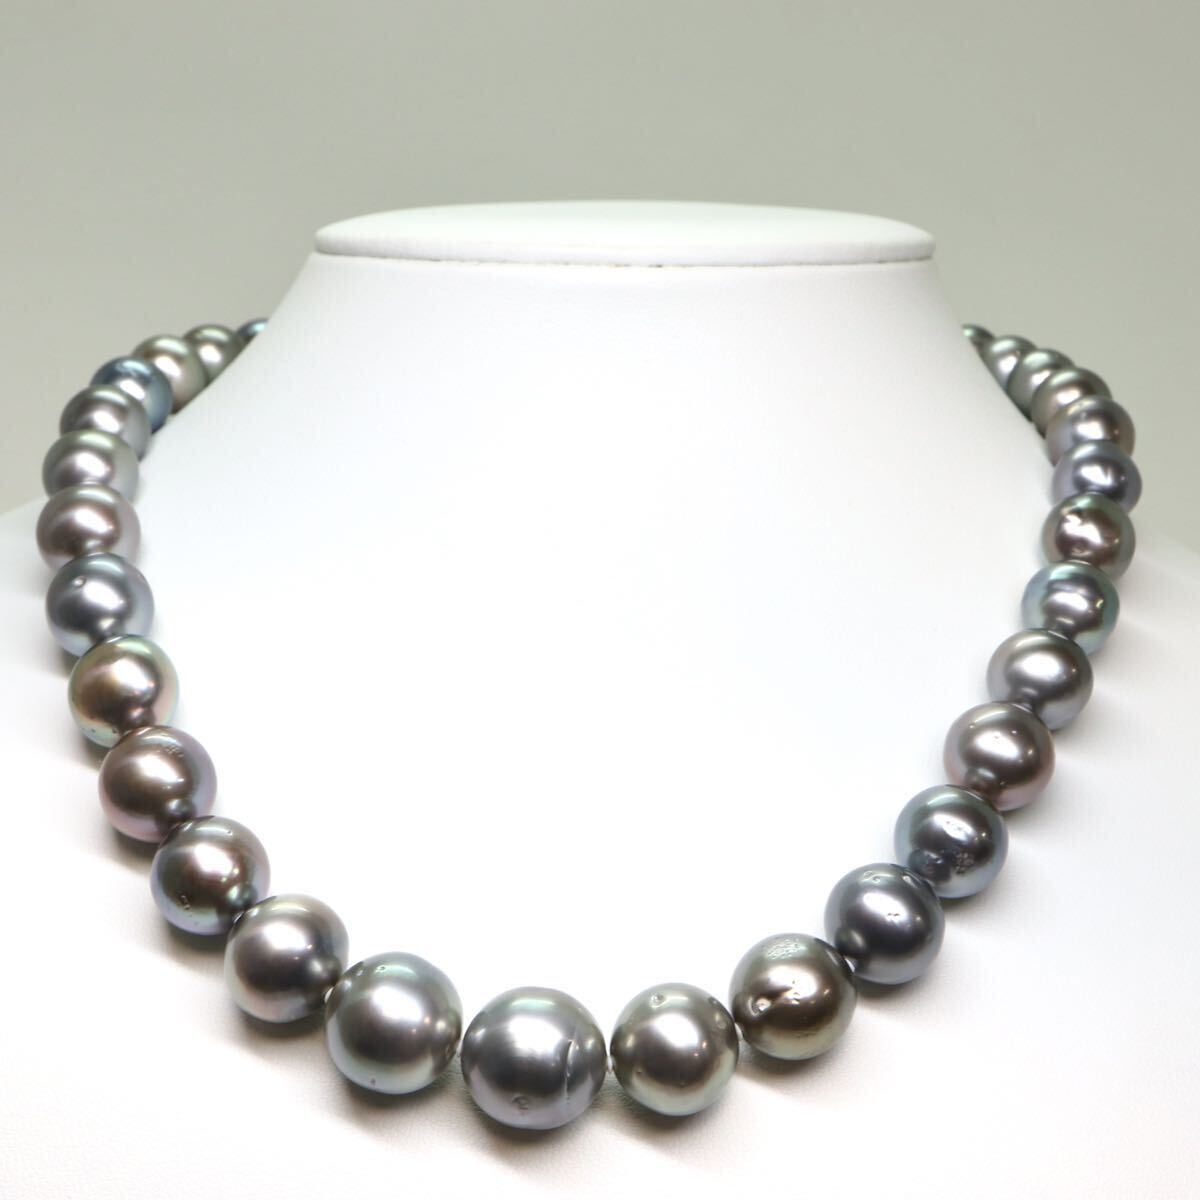 鑑別書付き!!《南洋黒蝶真珠ネックレス》A 約9.0-14.5mm珠 89.6g 約45cm pearl necklace ジュエリー jewelry EC0/EC0の画像2